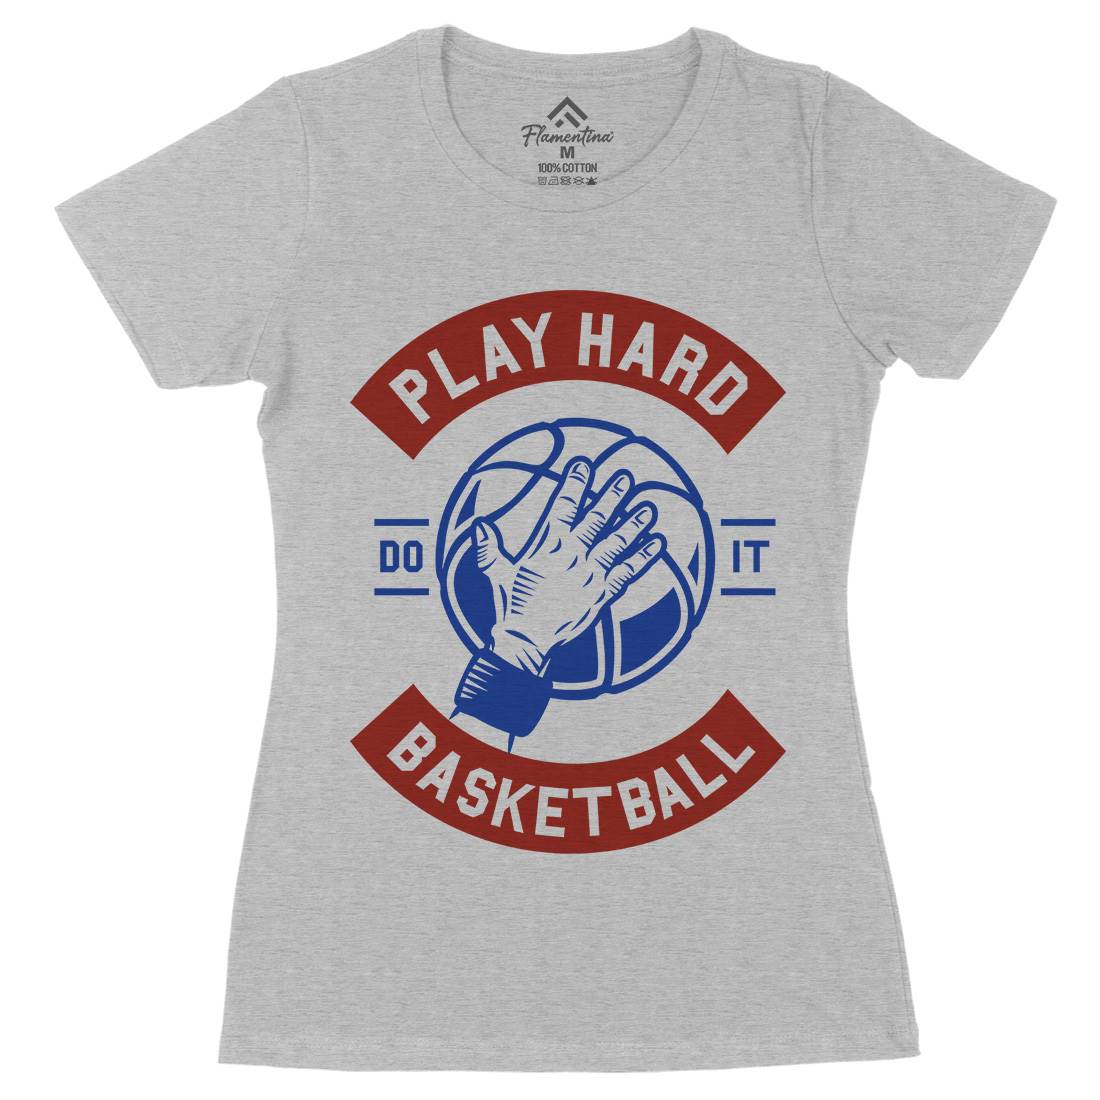 Play Hard Basketball Womens Organic Crew Neck T-Shirt Sport A261